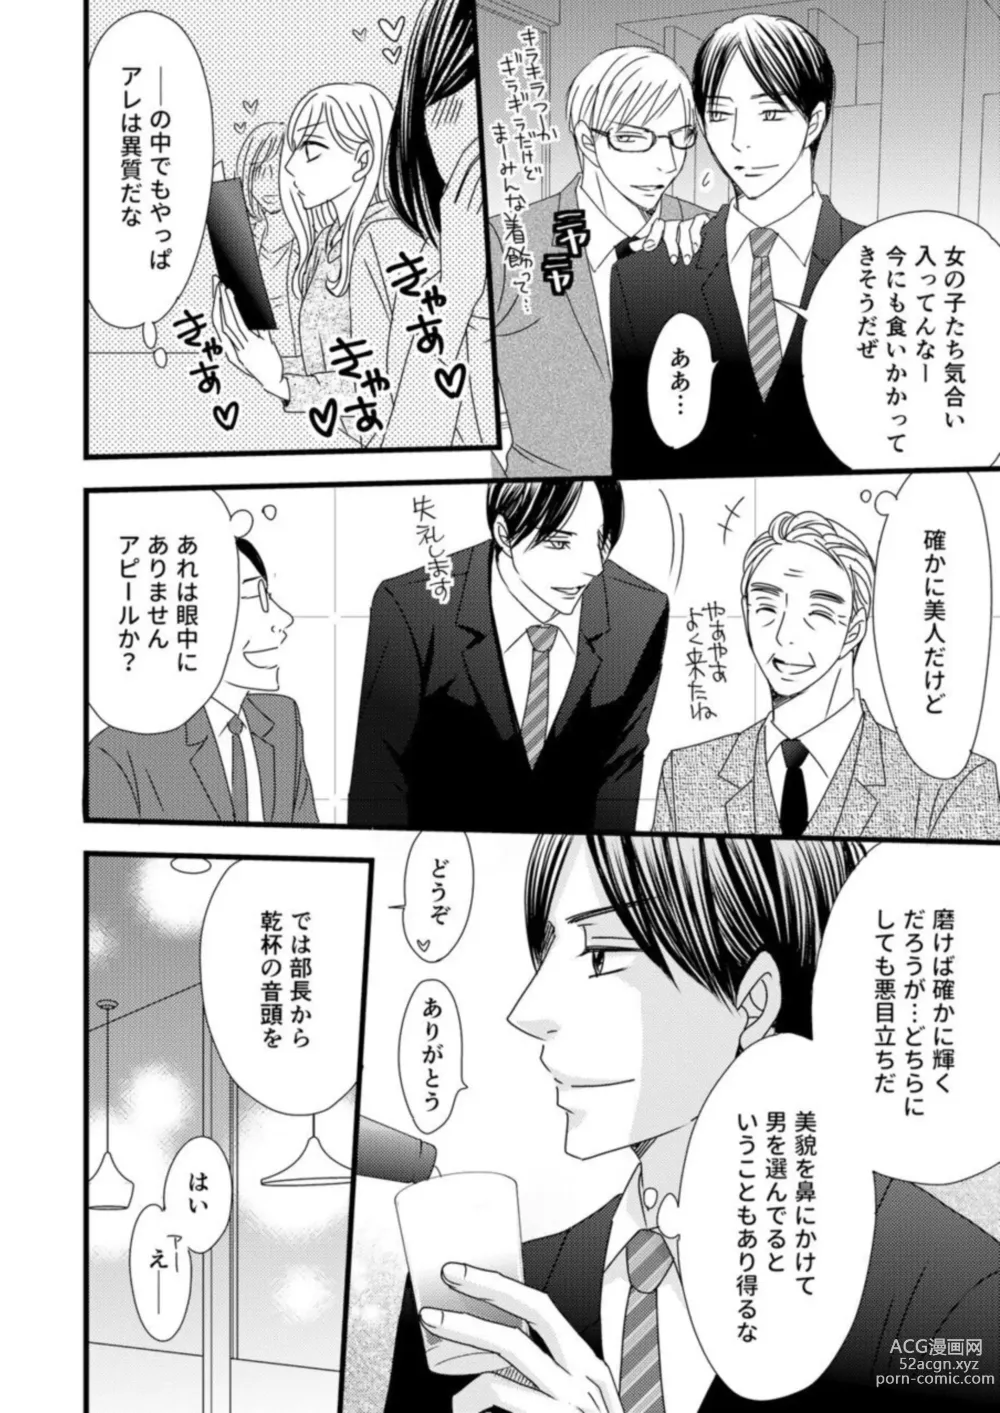 Page 20 of manga Takane no koi wa Mendokusai 1